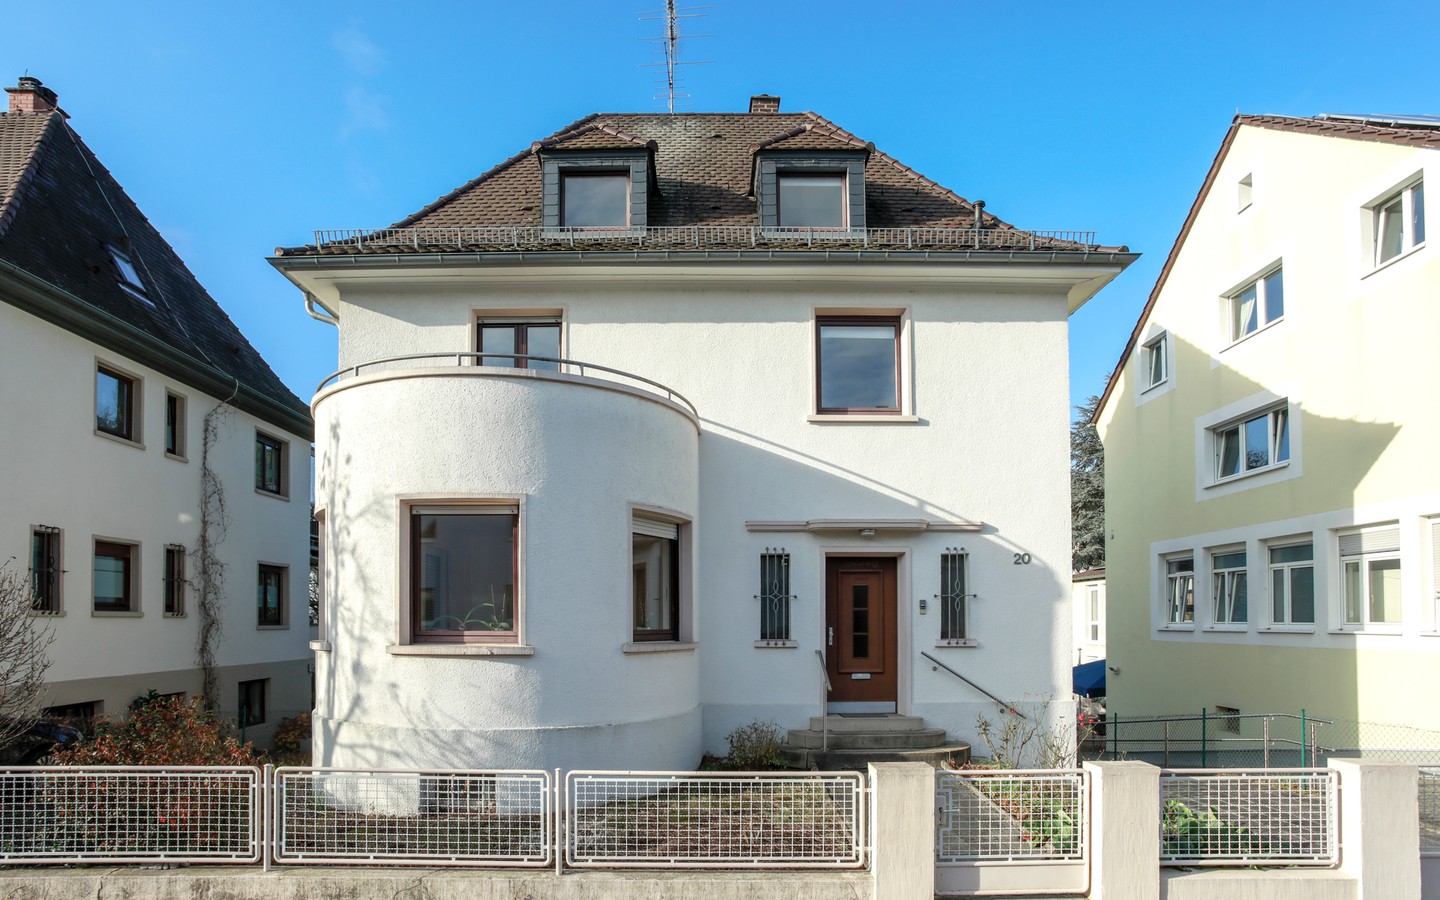 Hausansicht  - Rarität: Freistehendes Einfamilienhaus auf ca. 700qm großem Grundstück in der Heidelberger Weststadt